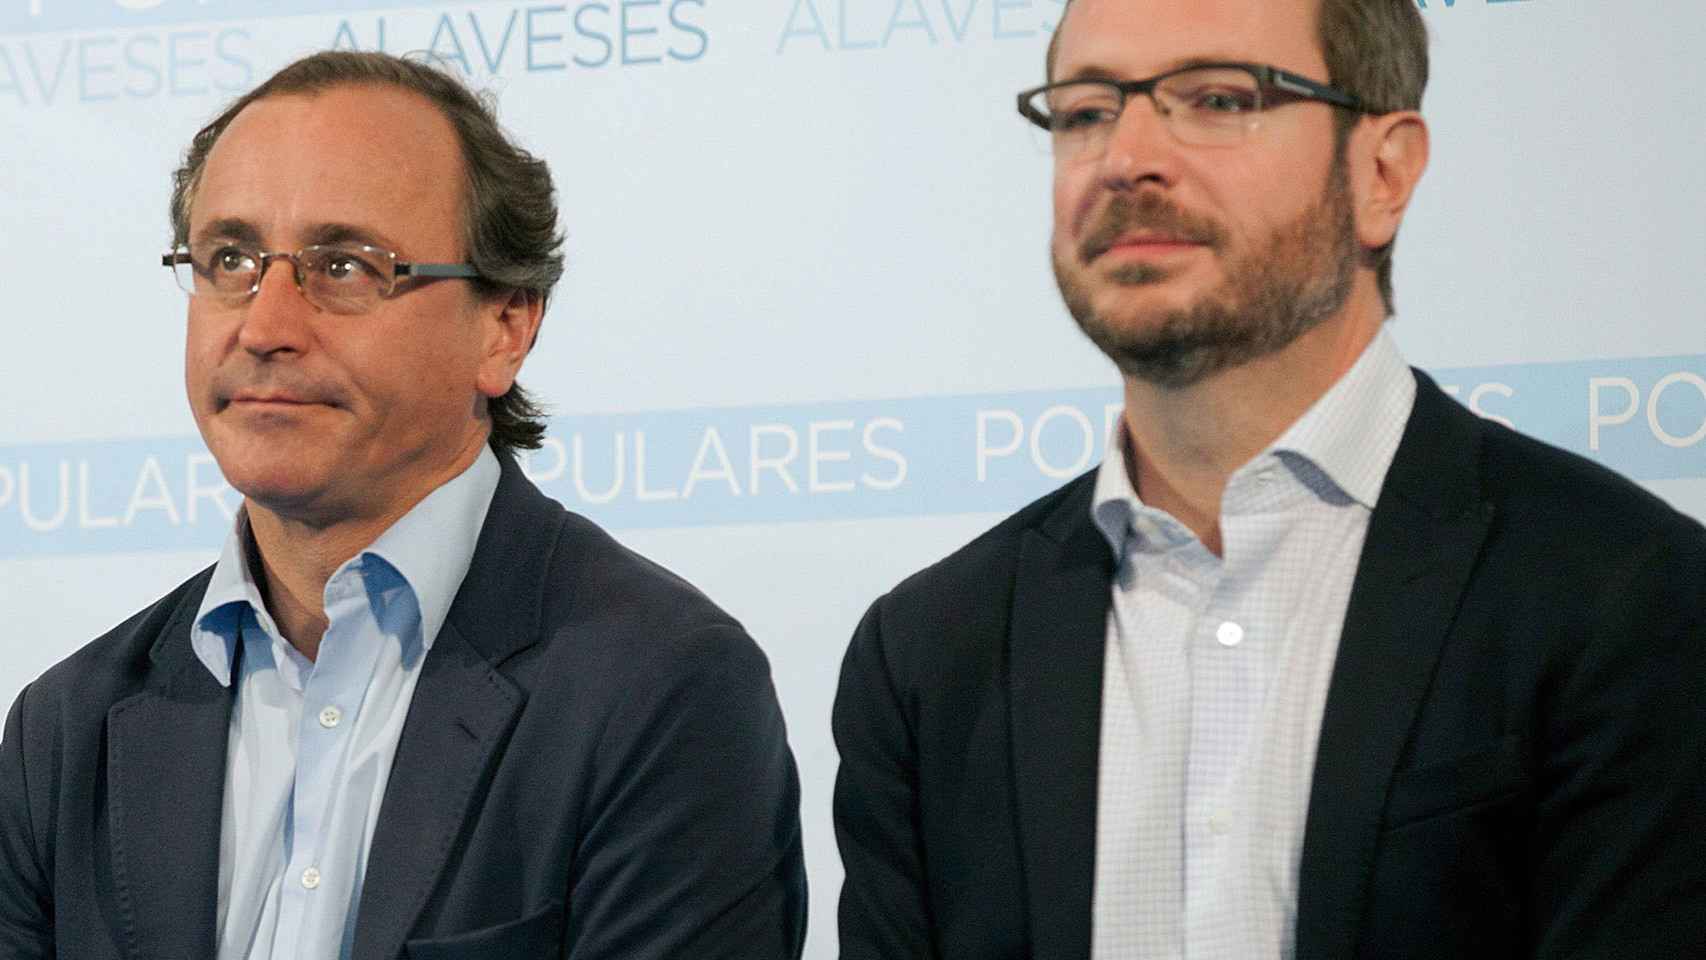 El ex ministro Alonso y Javier Maroto, juzgados por uso 'negligente' de fondos.